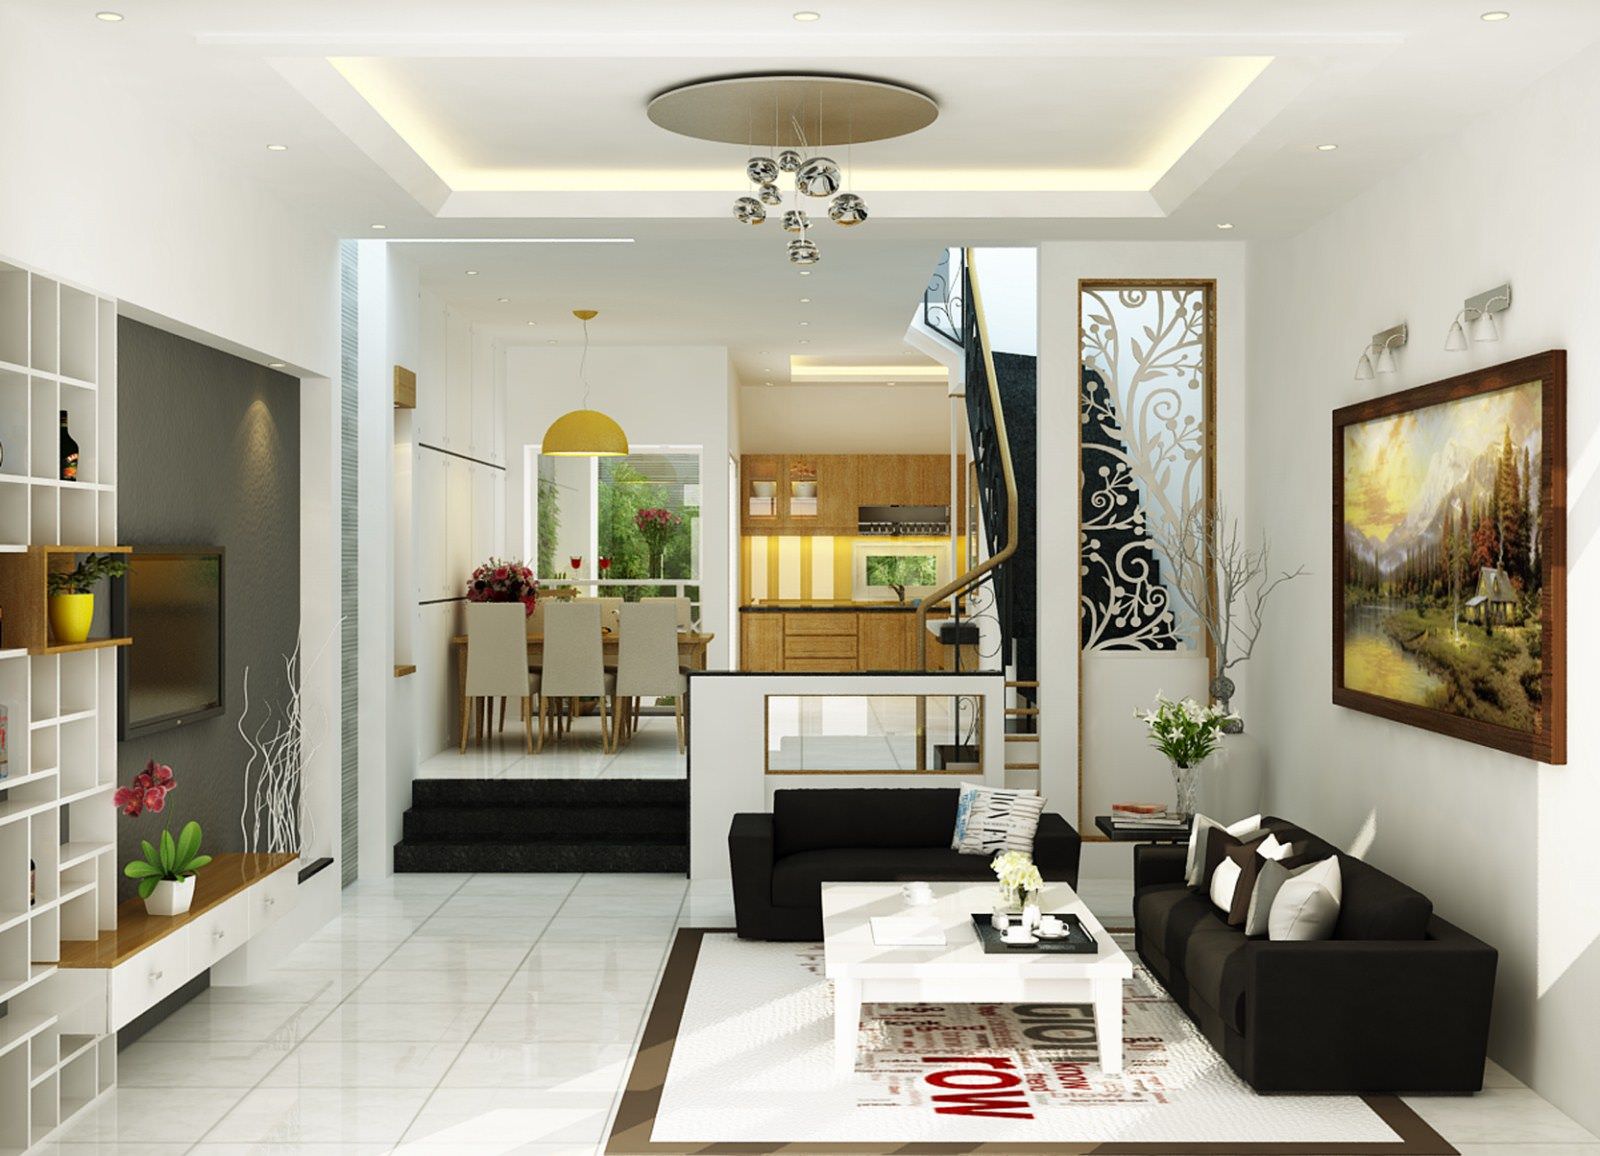 Mẫu phòng khách nhà ống đẹp hiện đại với tông màu trắng làm chủ đạo mang đến không gian thoáng đãng cho căn phòng